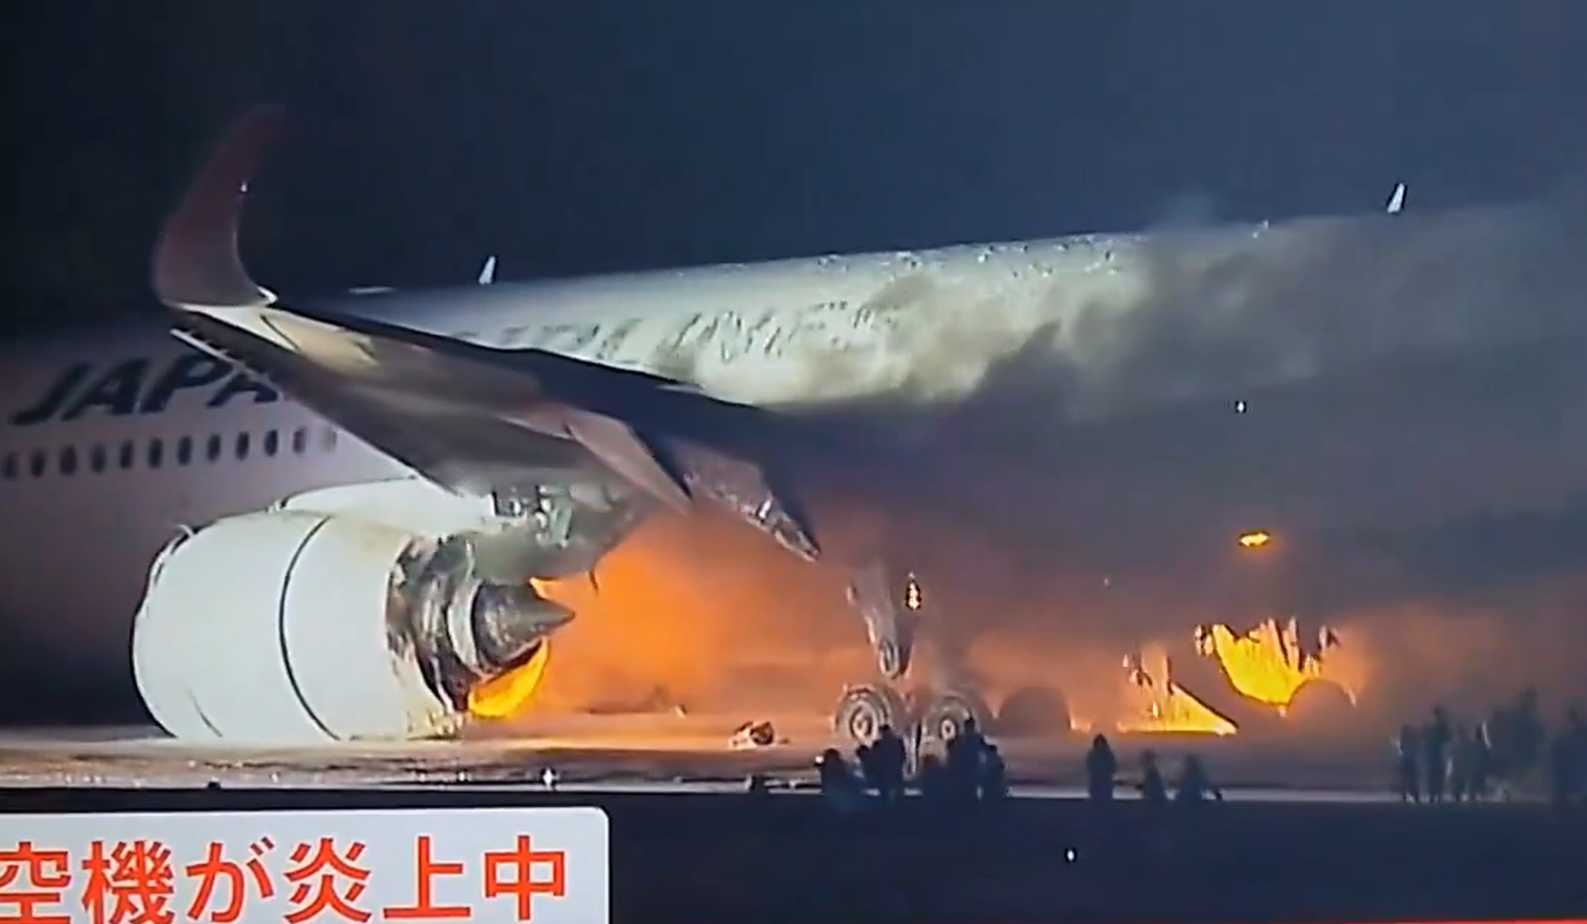 Breaking: több száz utassal a fedélzetén borult lángba egy repülő Japánban, miután egy másik géppel ütközött a kifutópályán